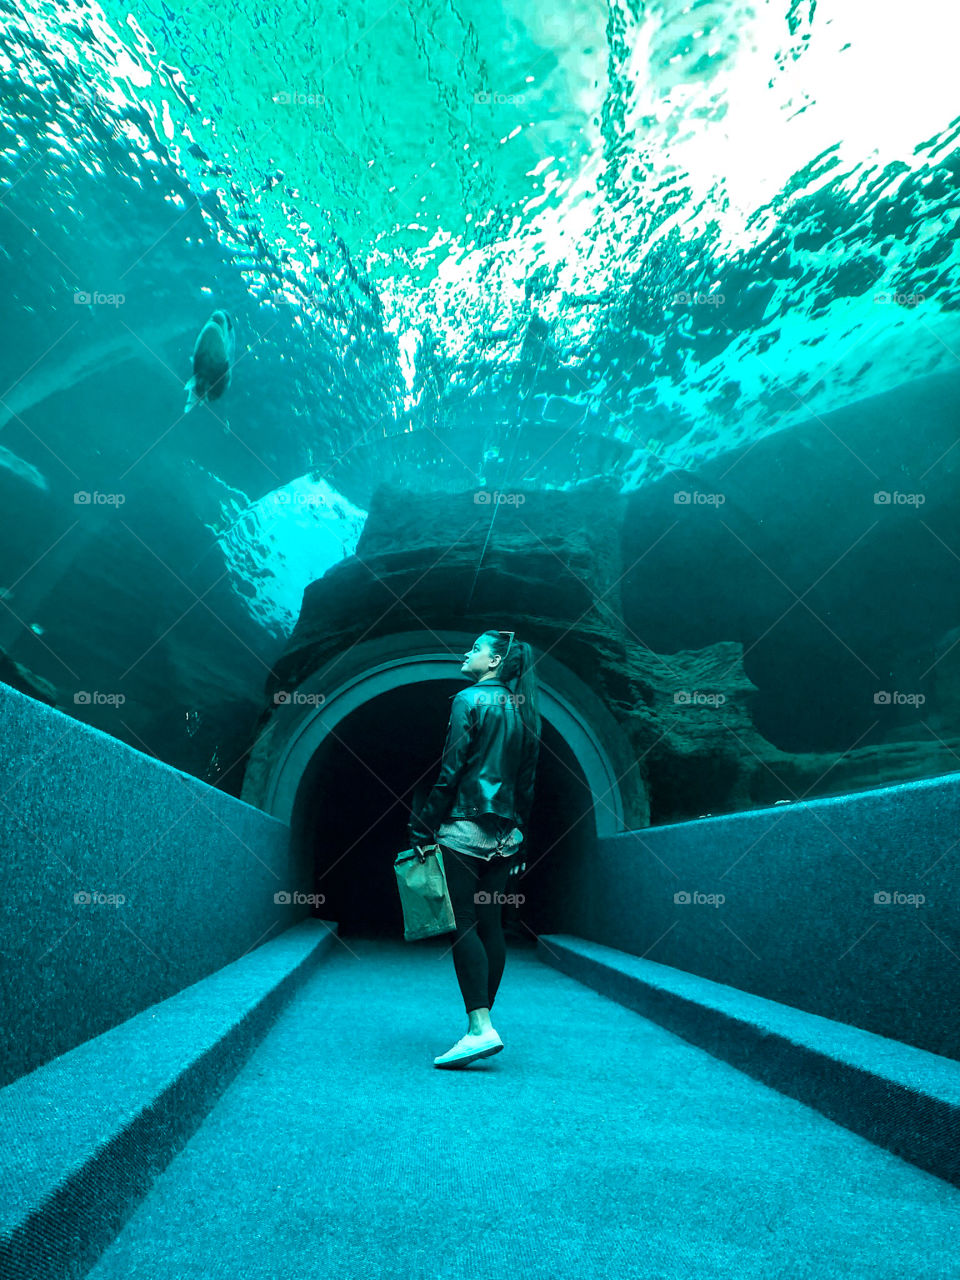 Two oceans aquarium 